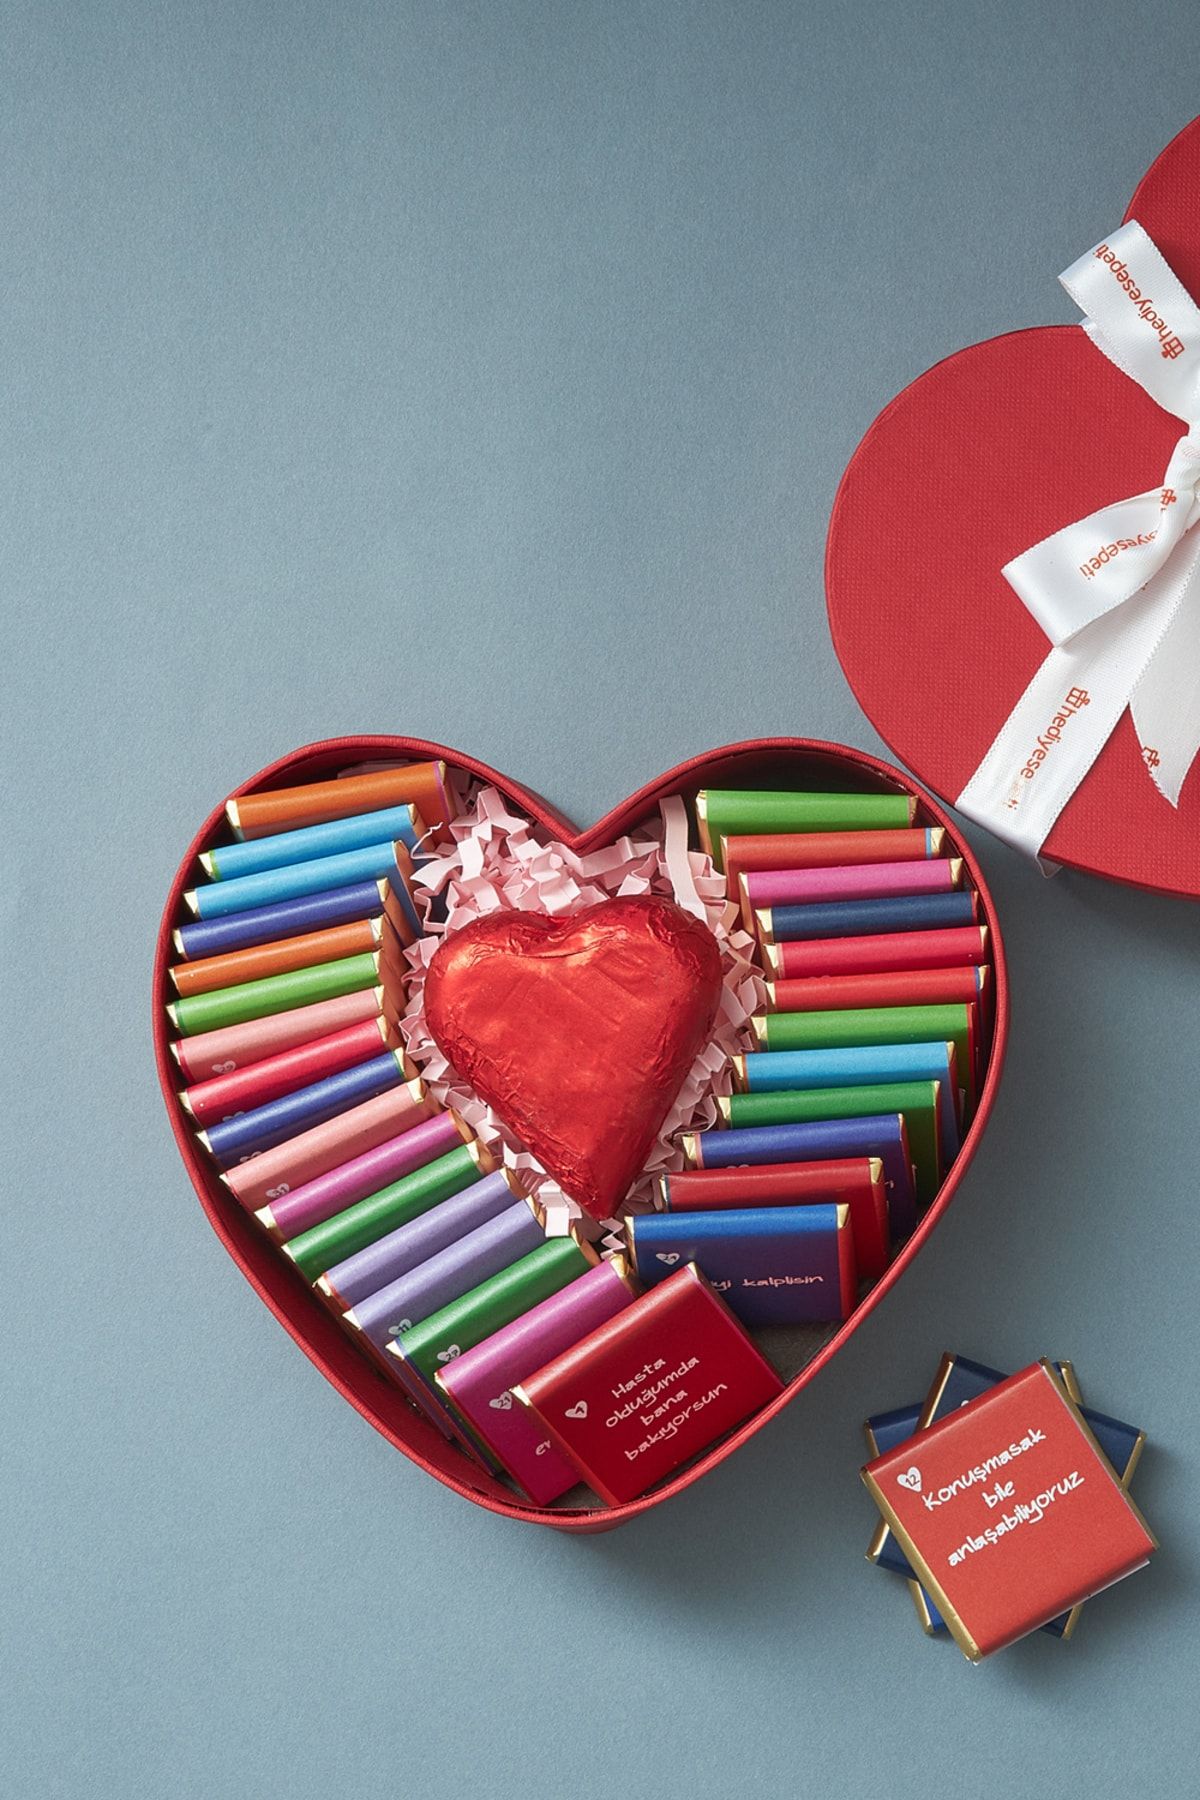 Hediyesepeti Kalp Kutulu Seni Sevmemin 32 Sebebi Çikolata - Sevgili Çikolatası - Sevgiliye Hediye Çikolata Kutusu